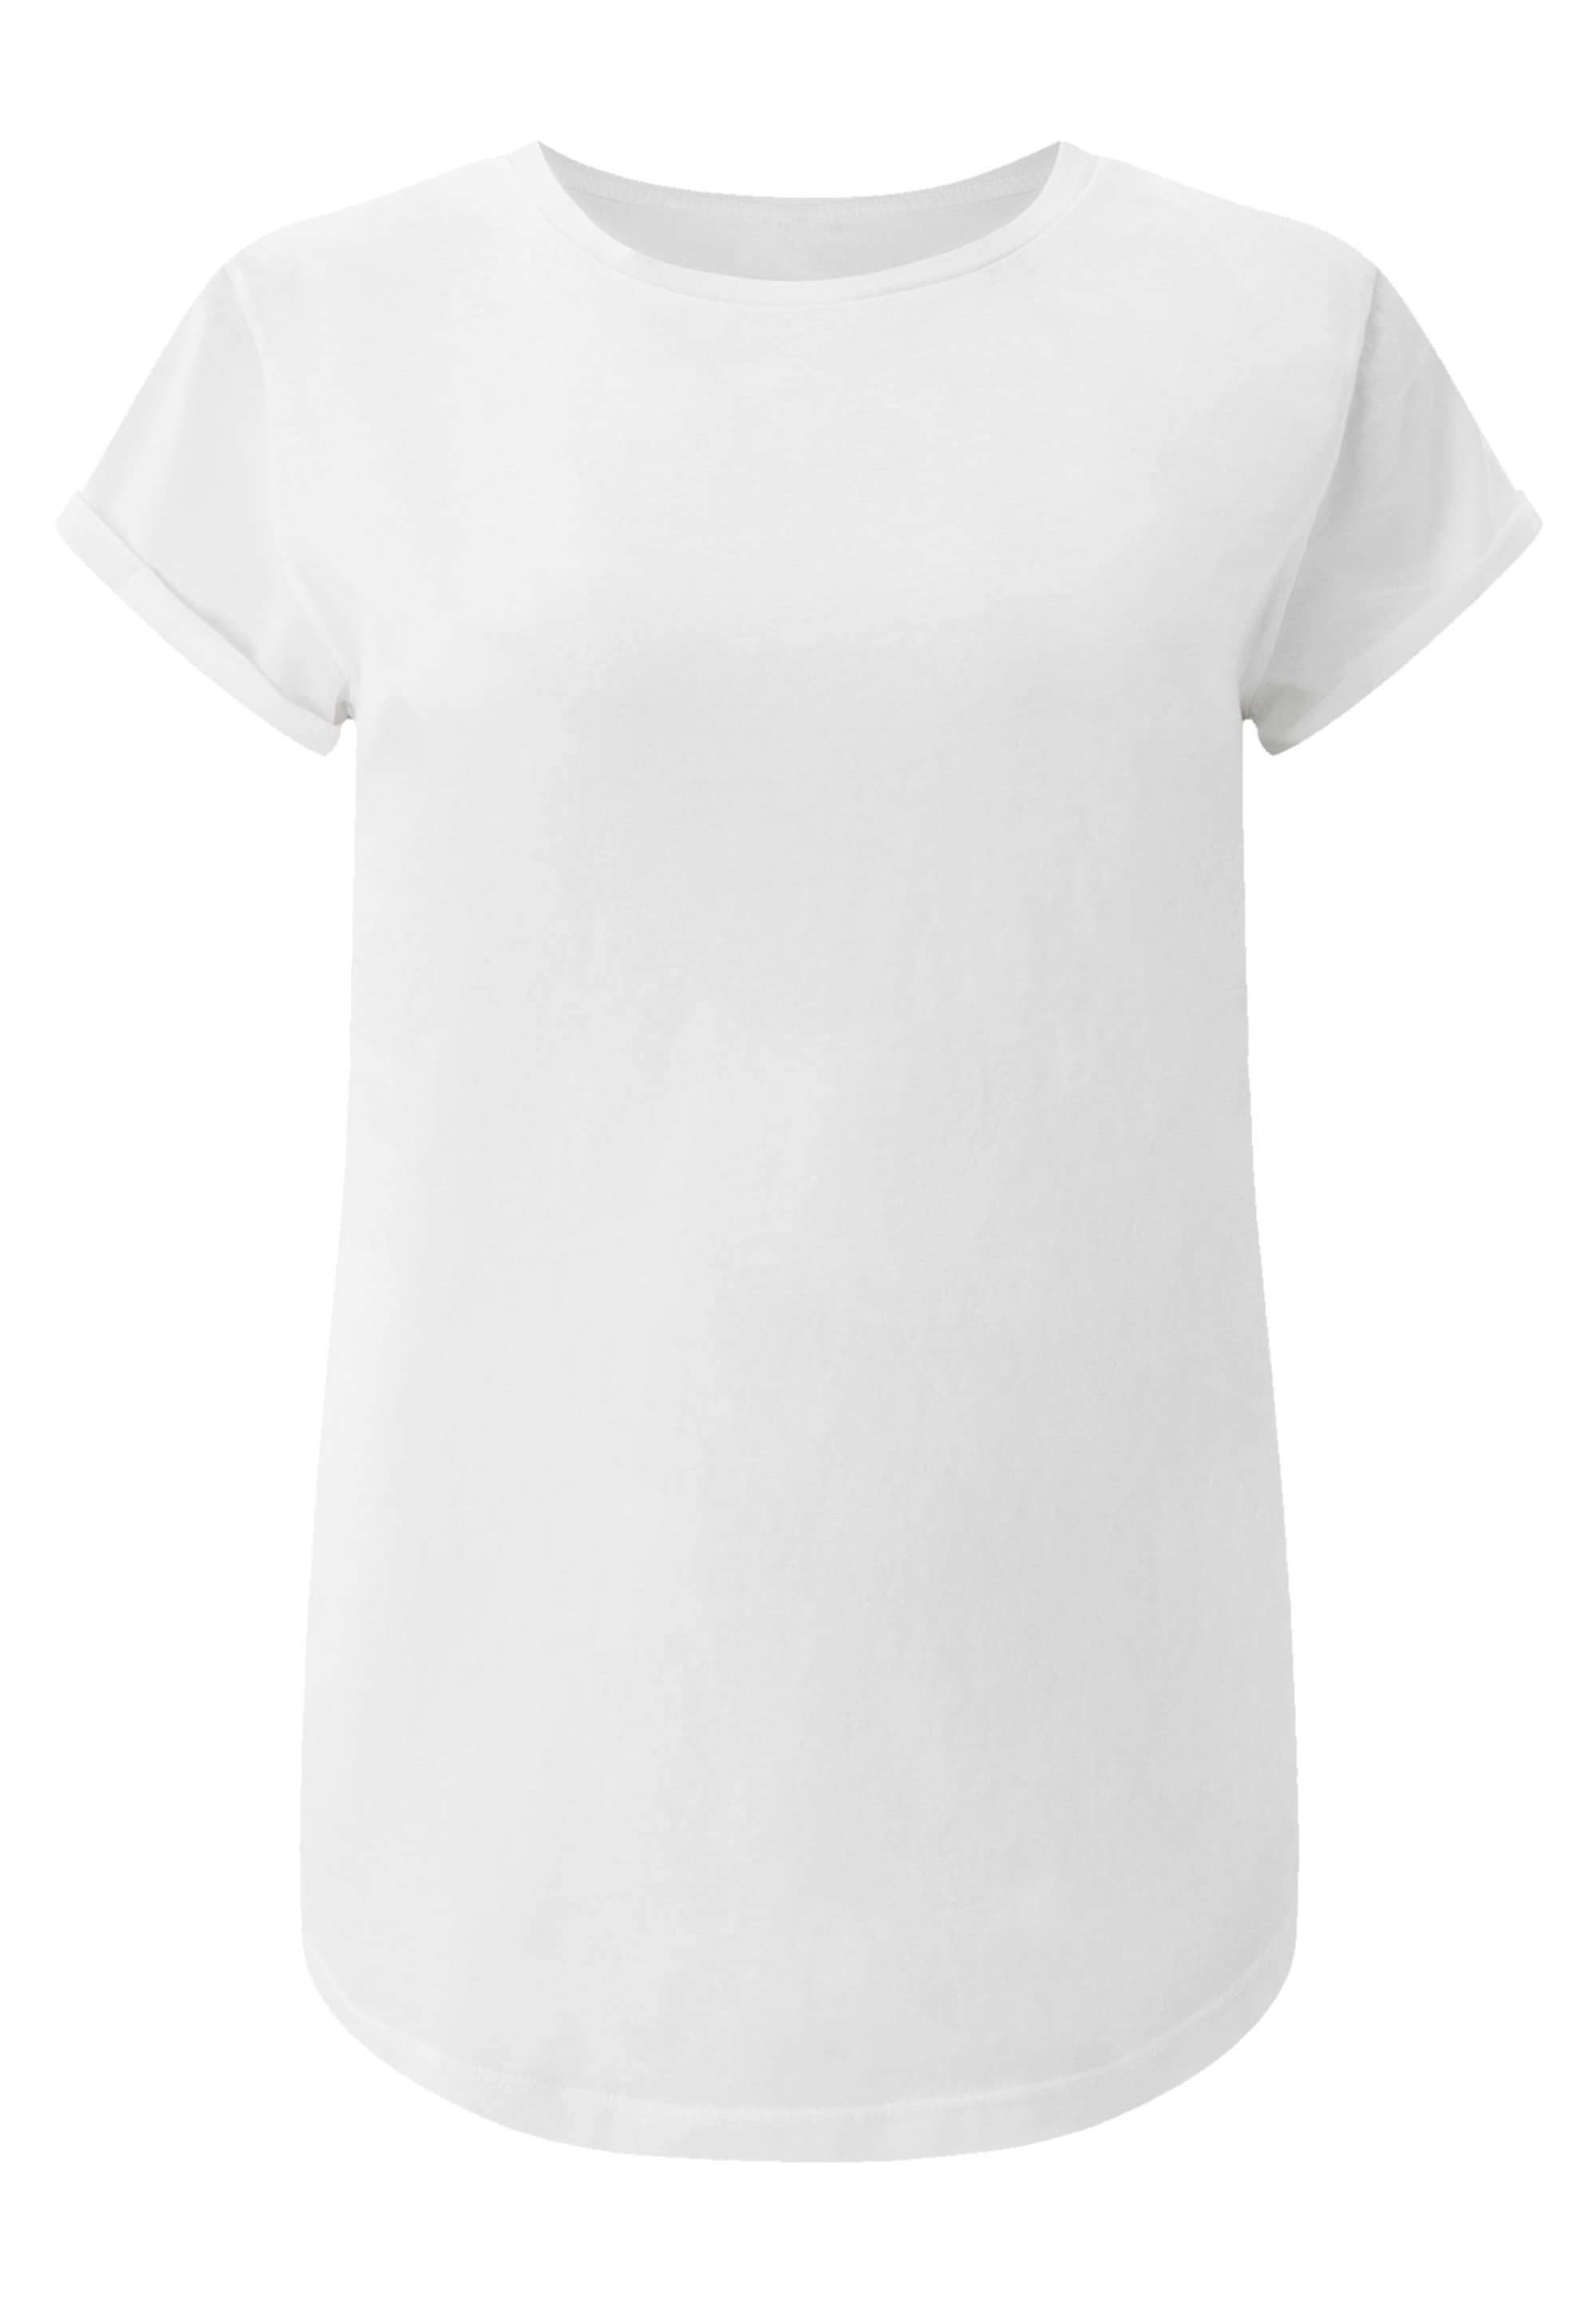 bestellen T-Shirt BAUR Print Welle«, Welle »Kanagawa F4NT4STIC | Japan für